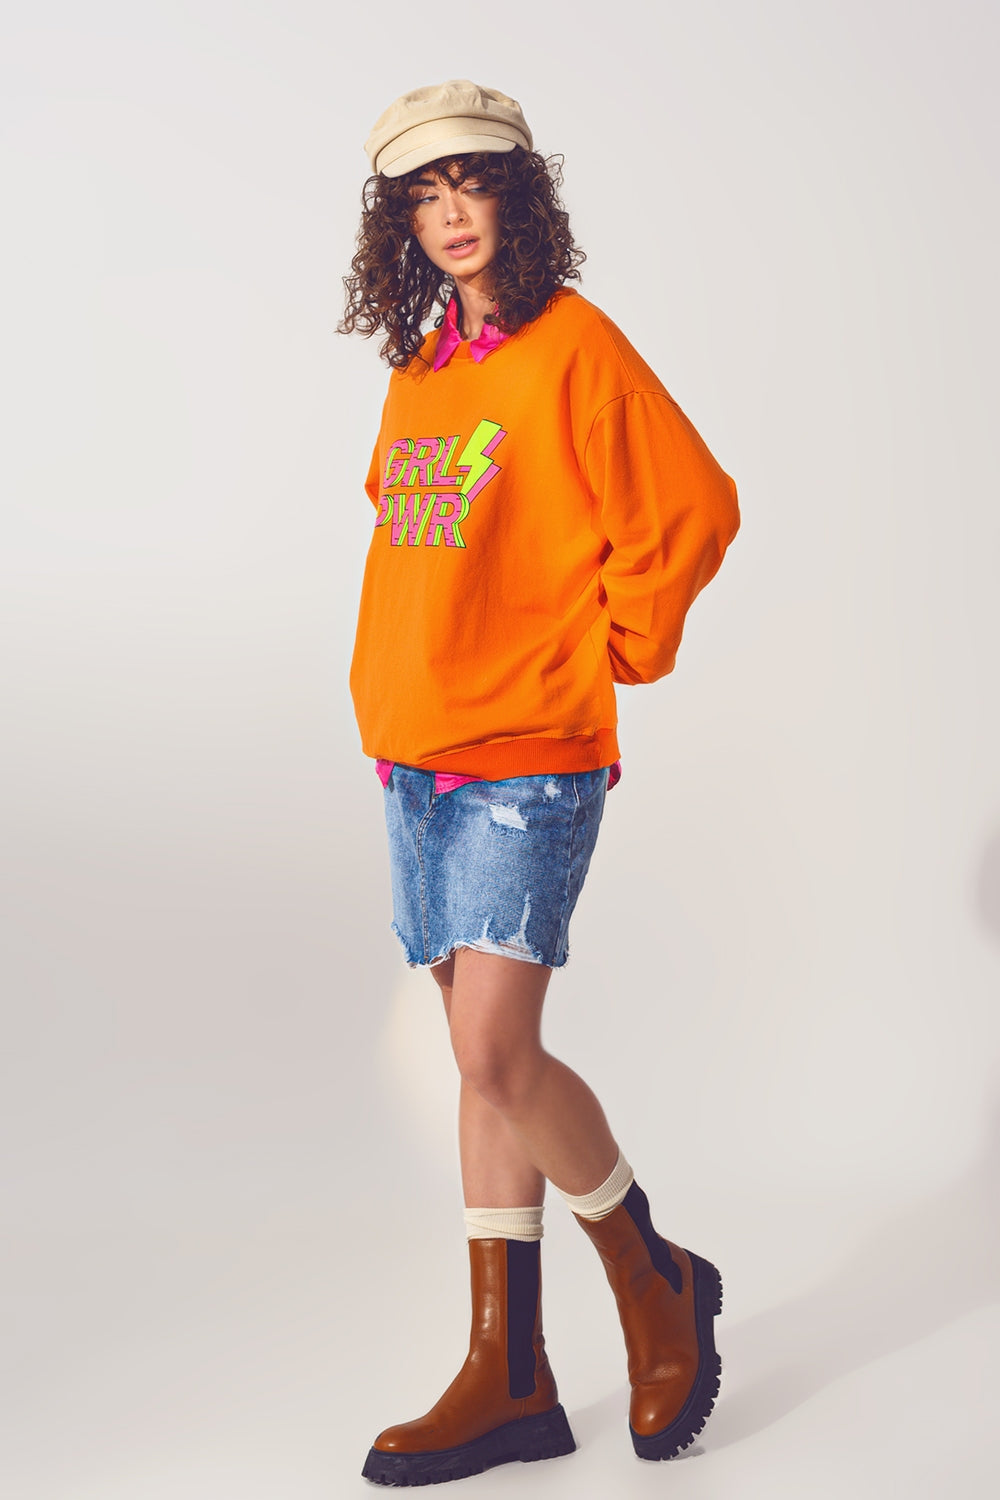 GRL PWR Text Sweatshirt in Orange - Szua Store